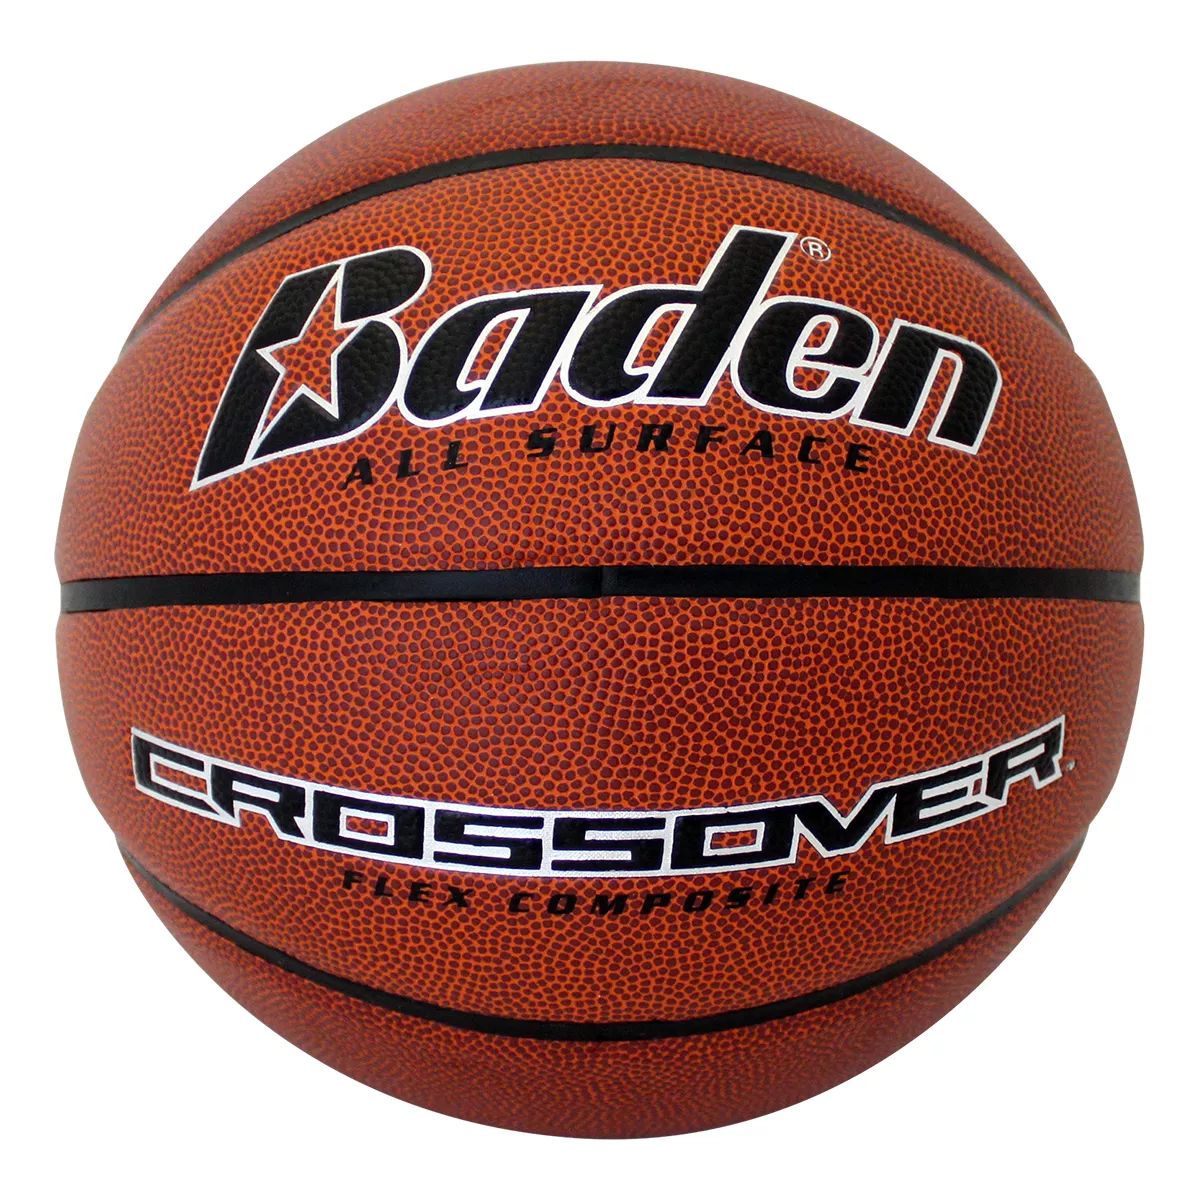 Baden Crossover Flex Composite Basketball  Size 7  Indoor/Outdoor